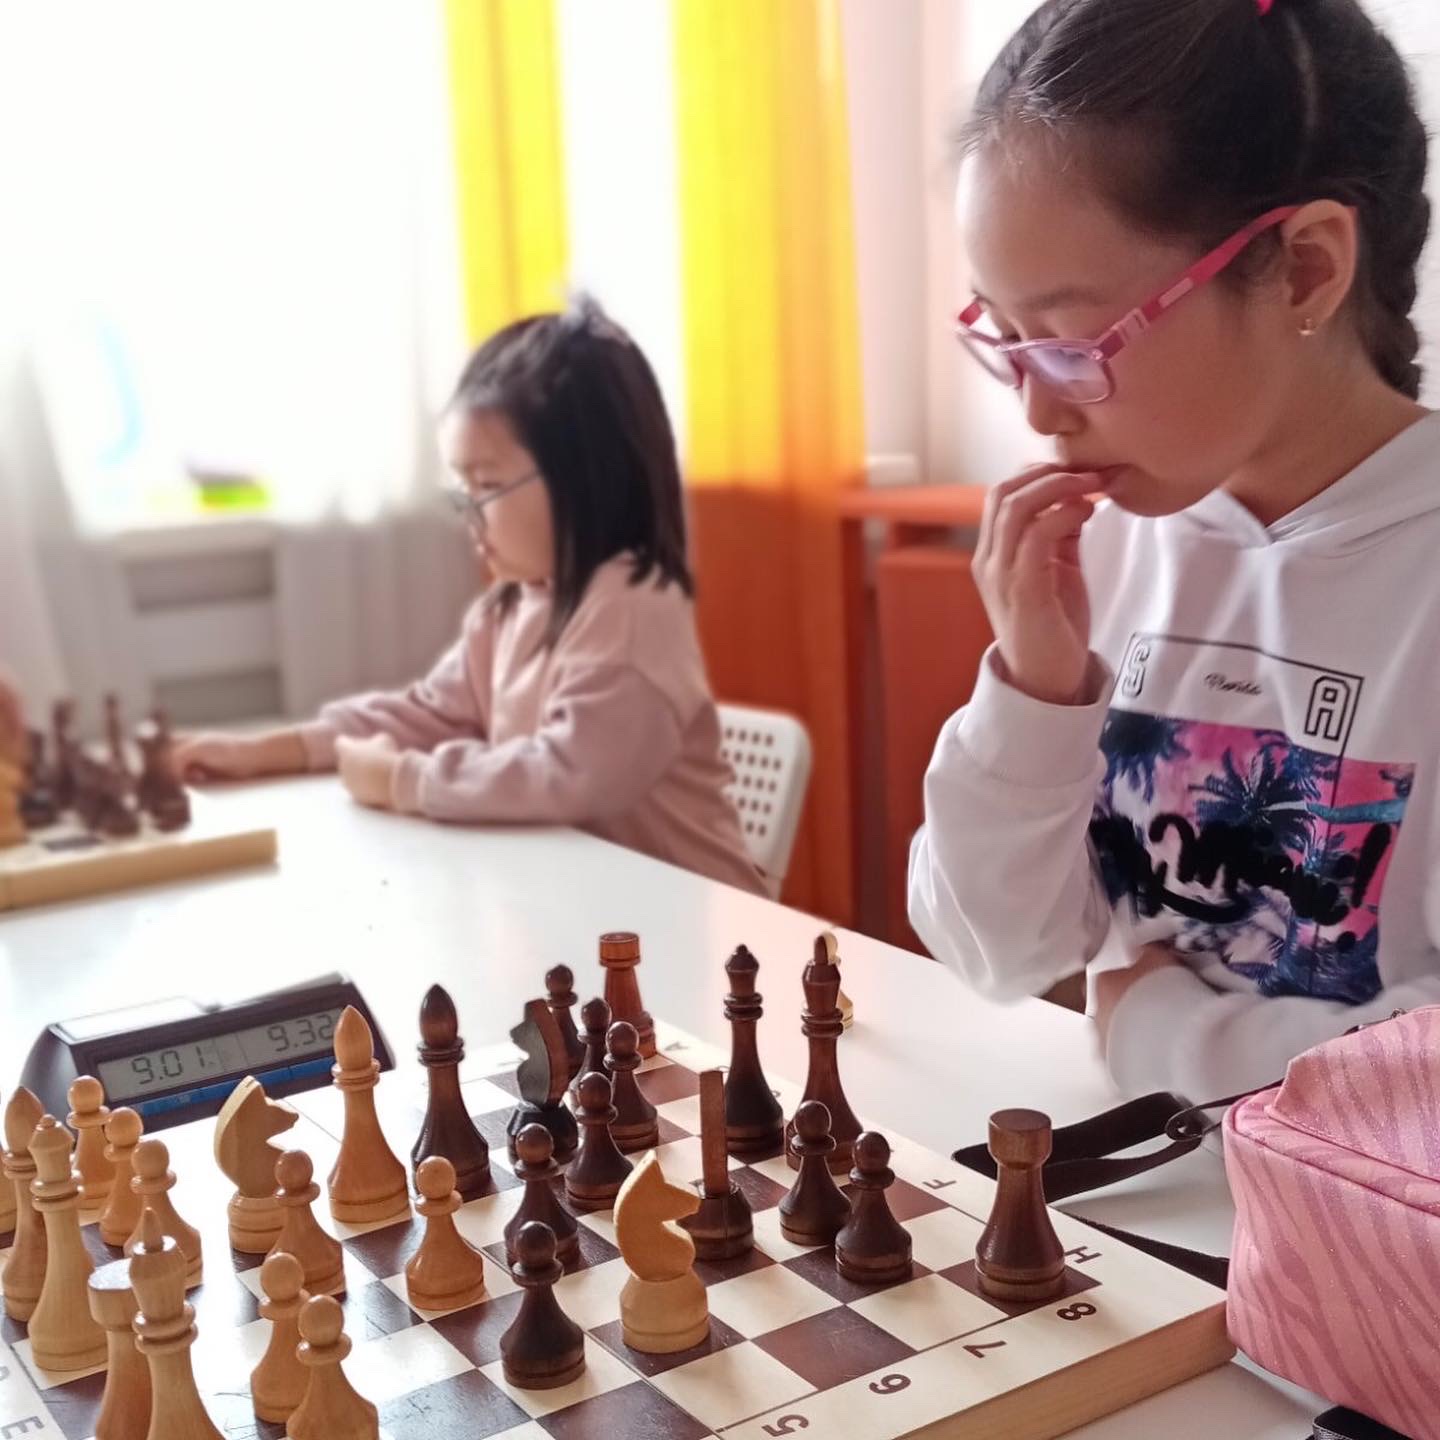 Компания «Оптика Сэсэг» выступила спонсором турнира по шахматам.